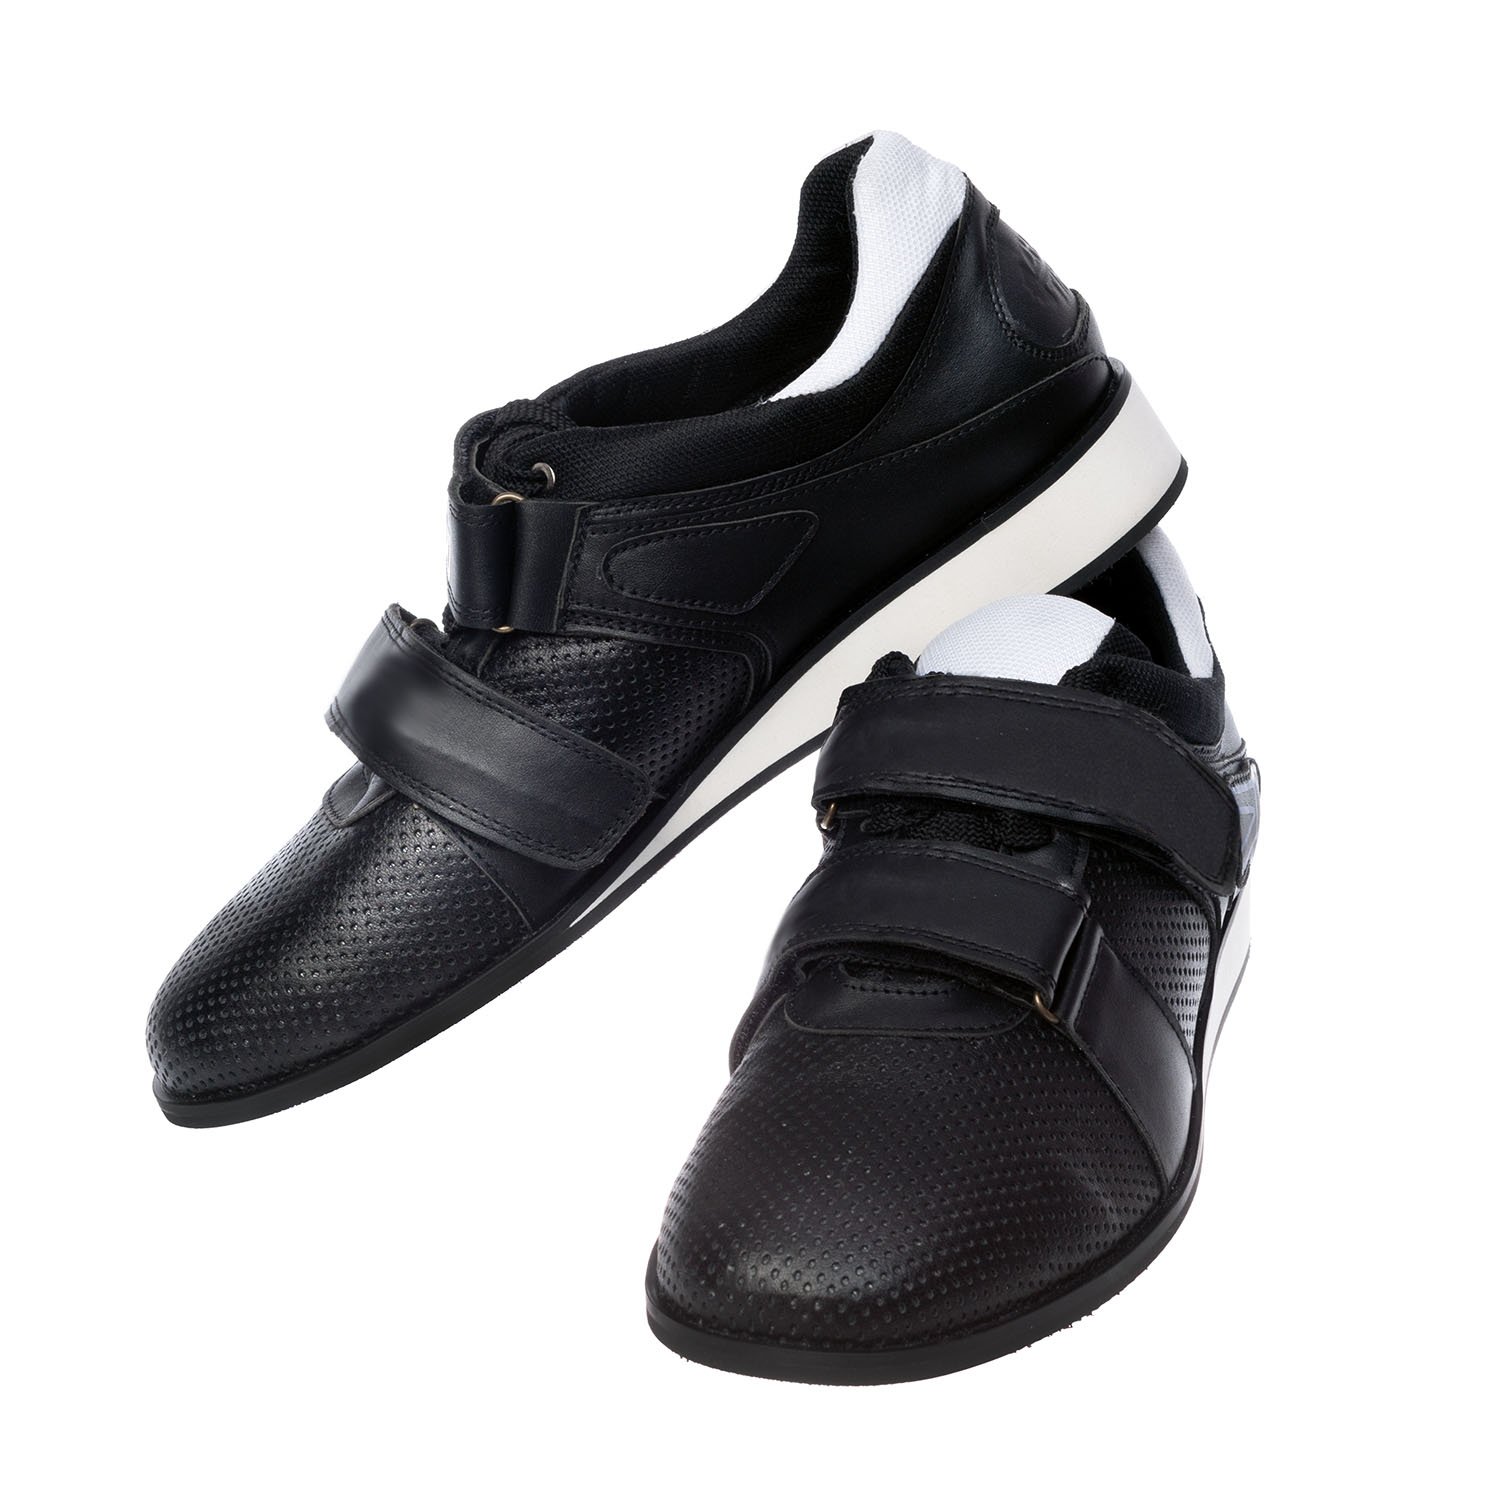 Weightlifting shoes Zhabotinsky Classic, black, size 38 (UKR)